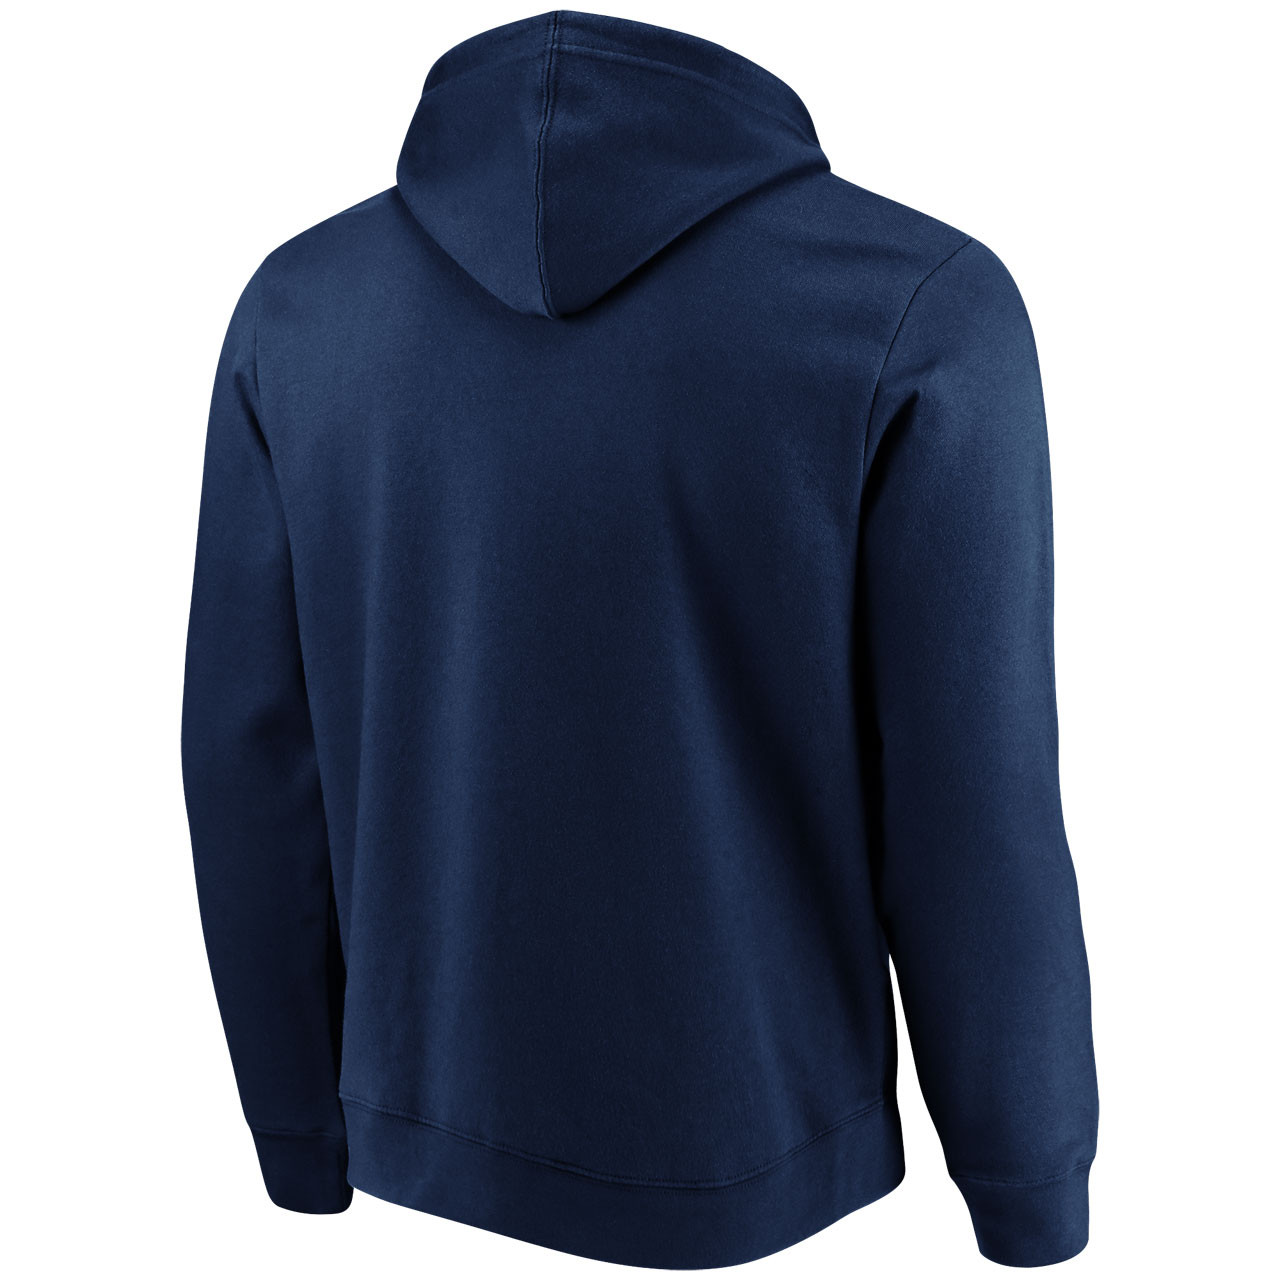 Order Zip Up Hooded Sweatshirt | Navy Sweatshirt